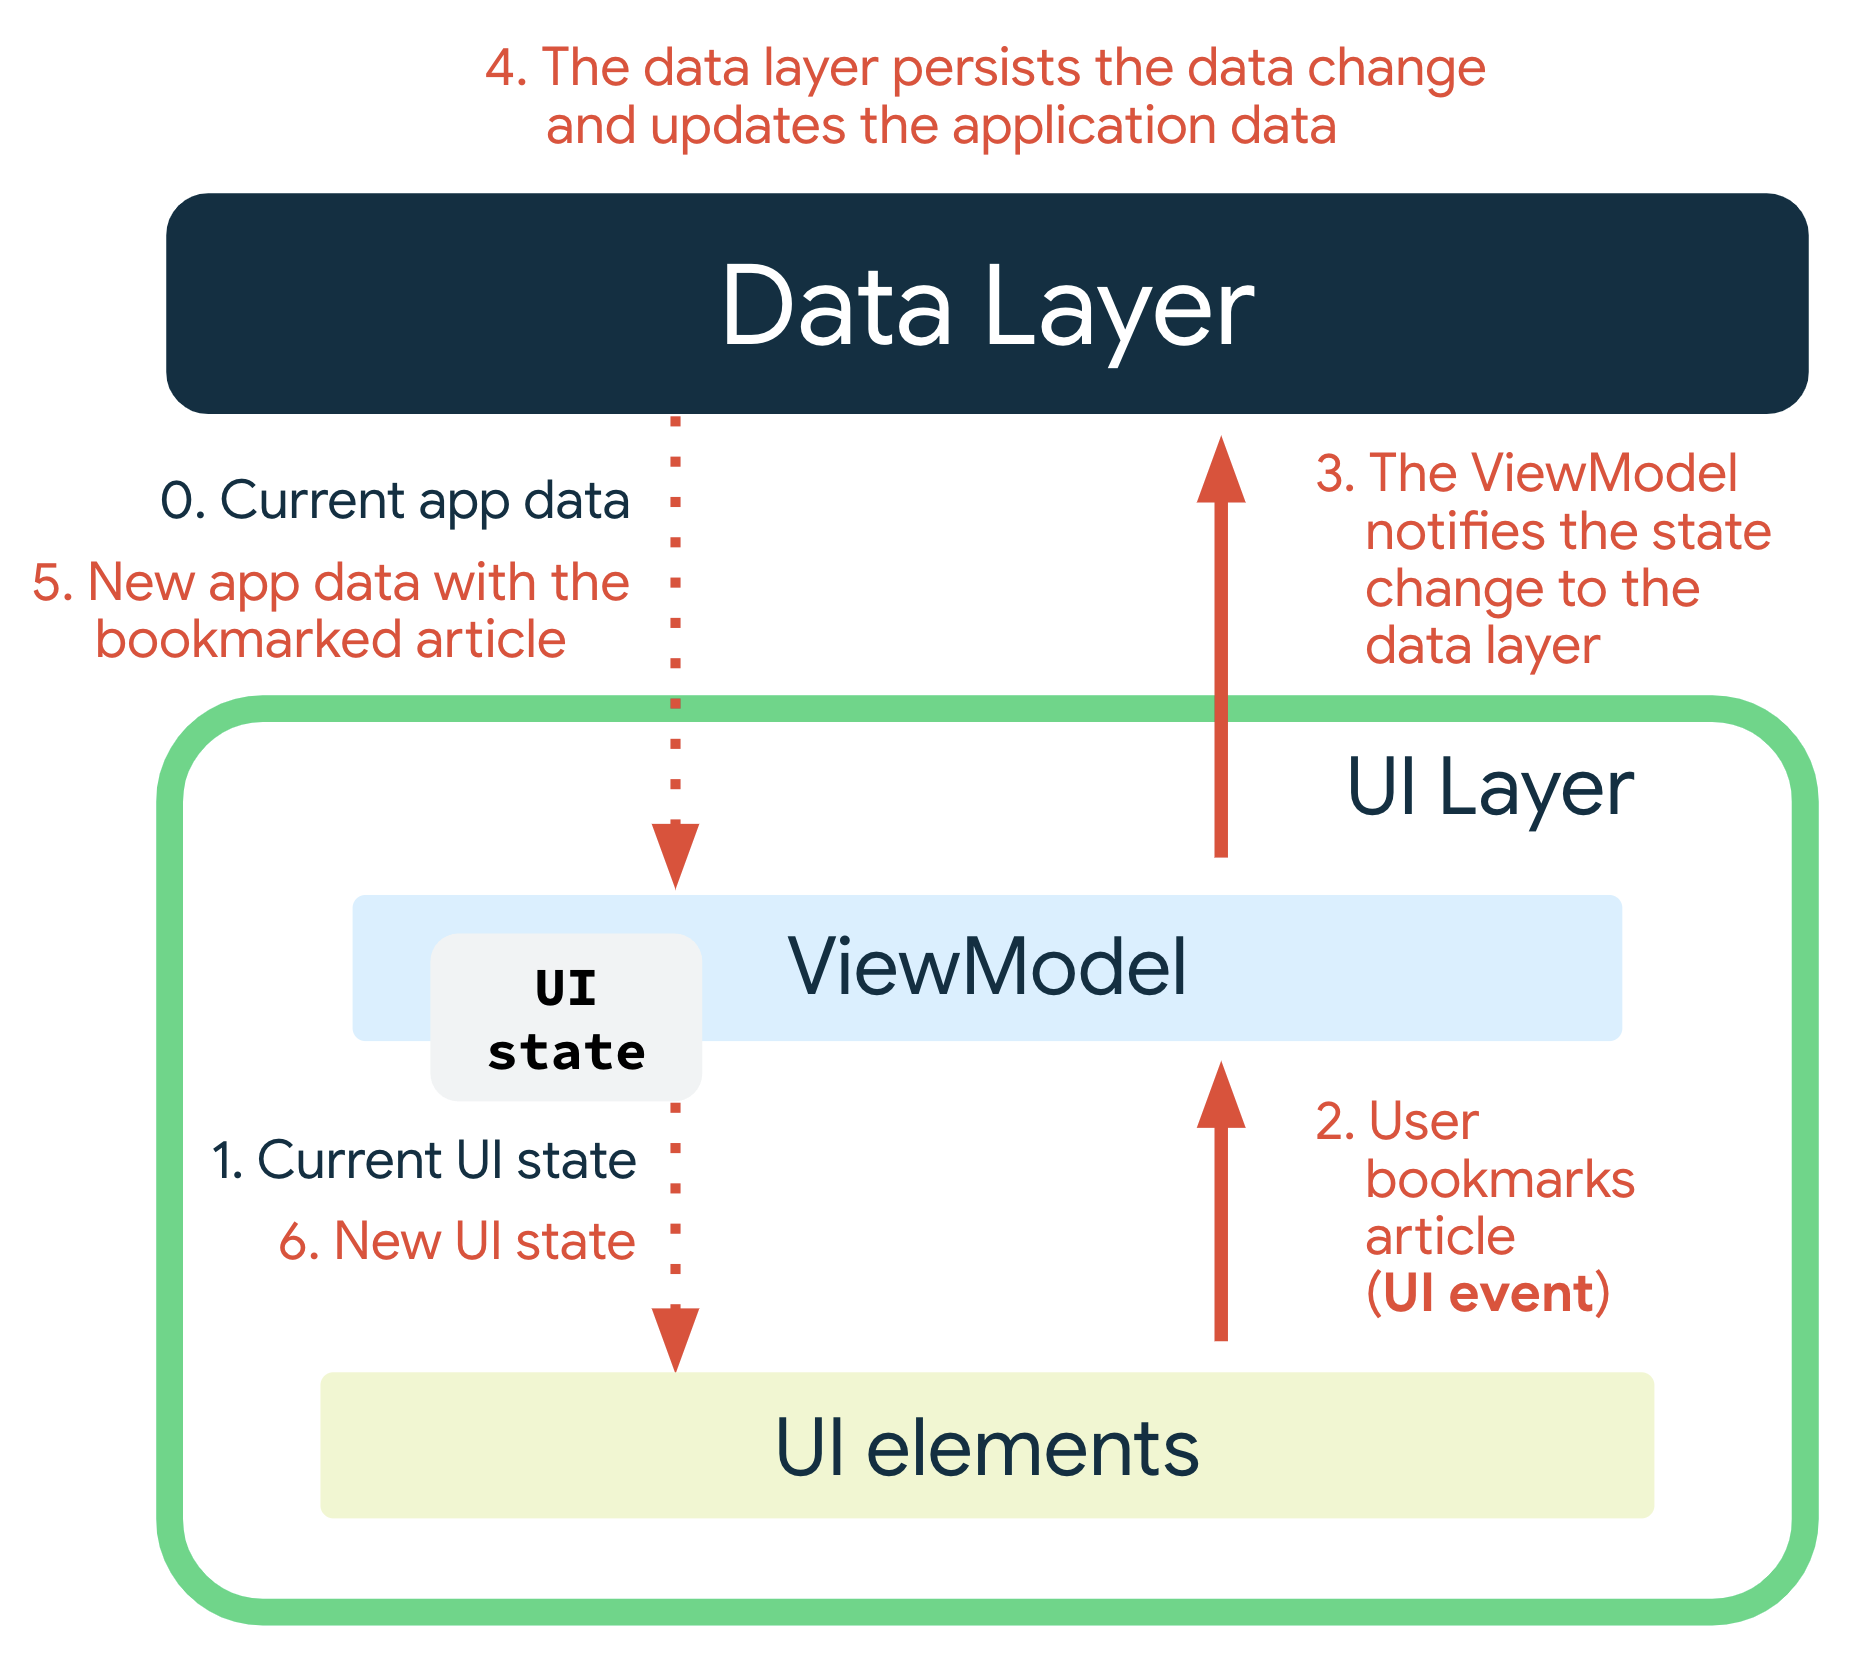 Un événement d'interface utilisateur se produit lorsque l'utilisateur ajoute un article à ses favoris. Le ViewModel informe la couche de données du changement d'état. La couche de données applique la modification des données et met à jour les données de l'application. Les nouvelles données d'application comportant l'article ajouté aux favoris sont transmises à ViewModel, qui génère ensuite le nouvel état de l'interface utilisateur et le transmet aux éléments d'UI pour affichage.